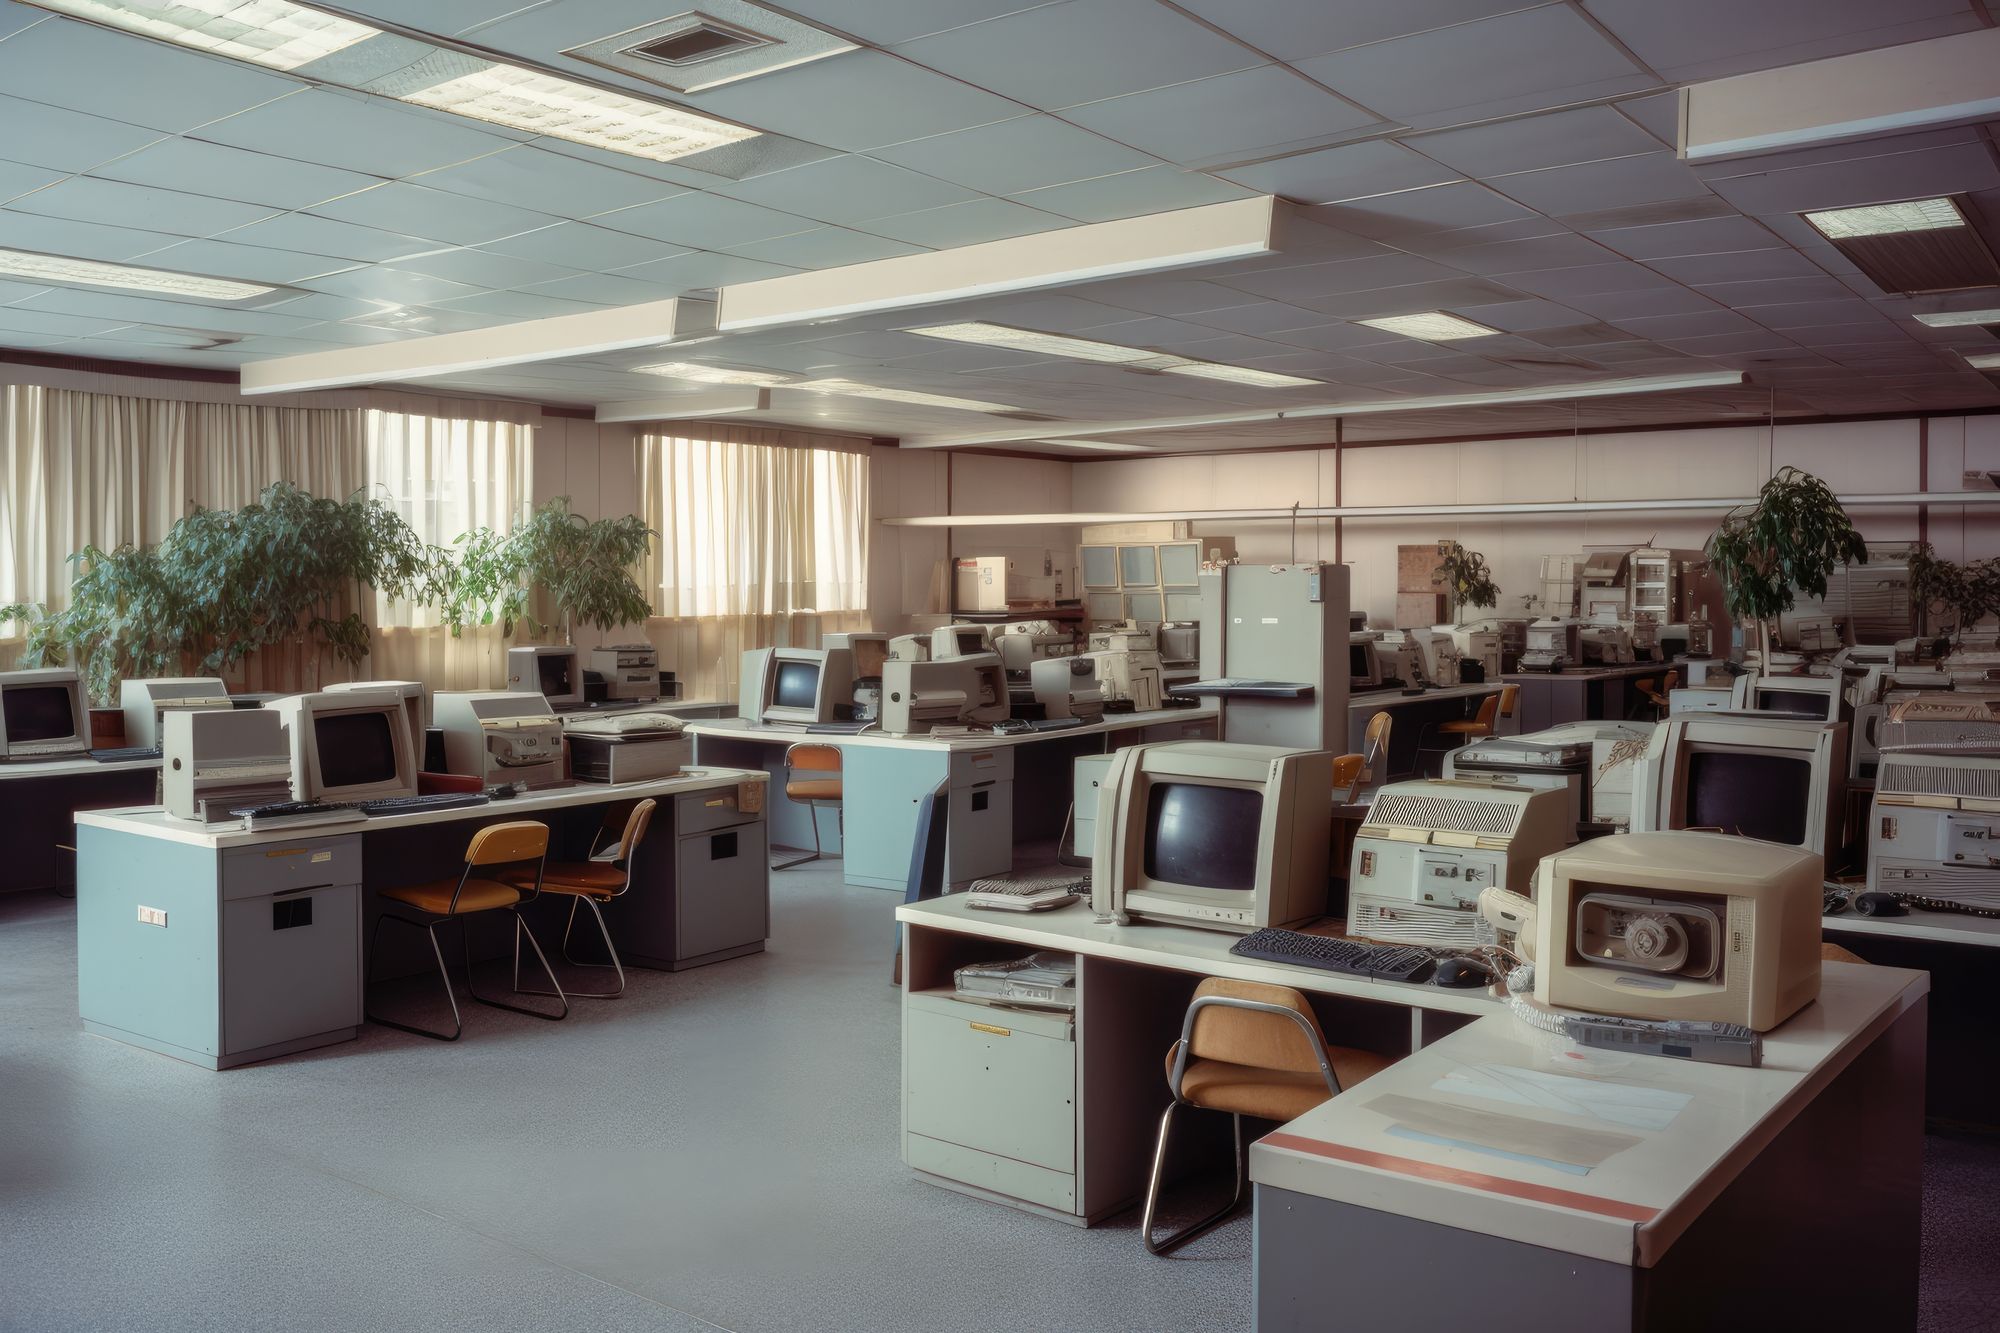 Intérieur de bureau dans le style des années 1980 avec des ordinateurs, des bureaux et des plantes d'époque.